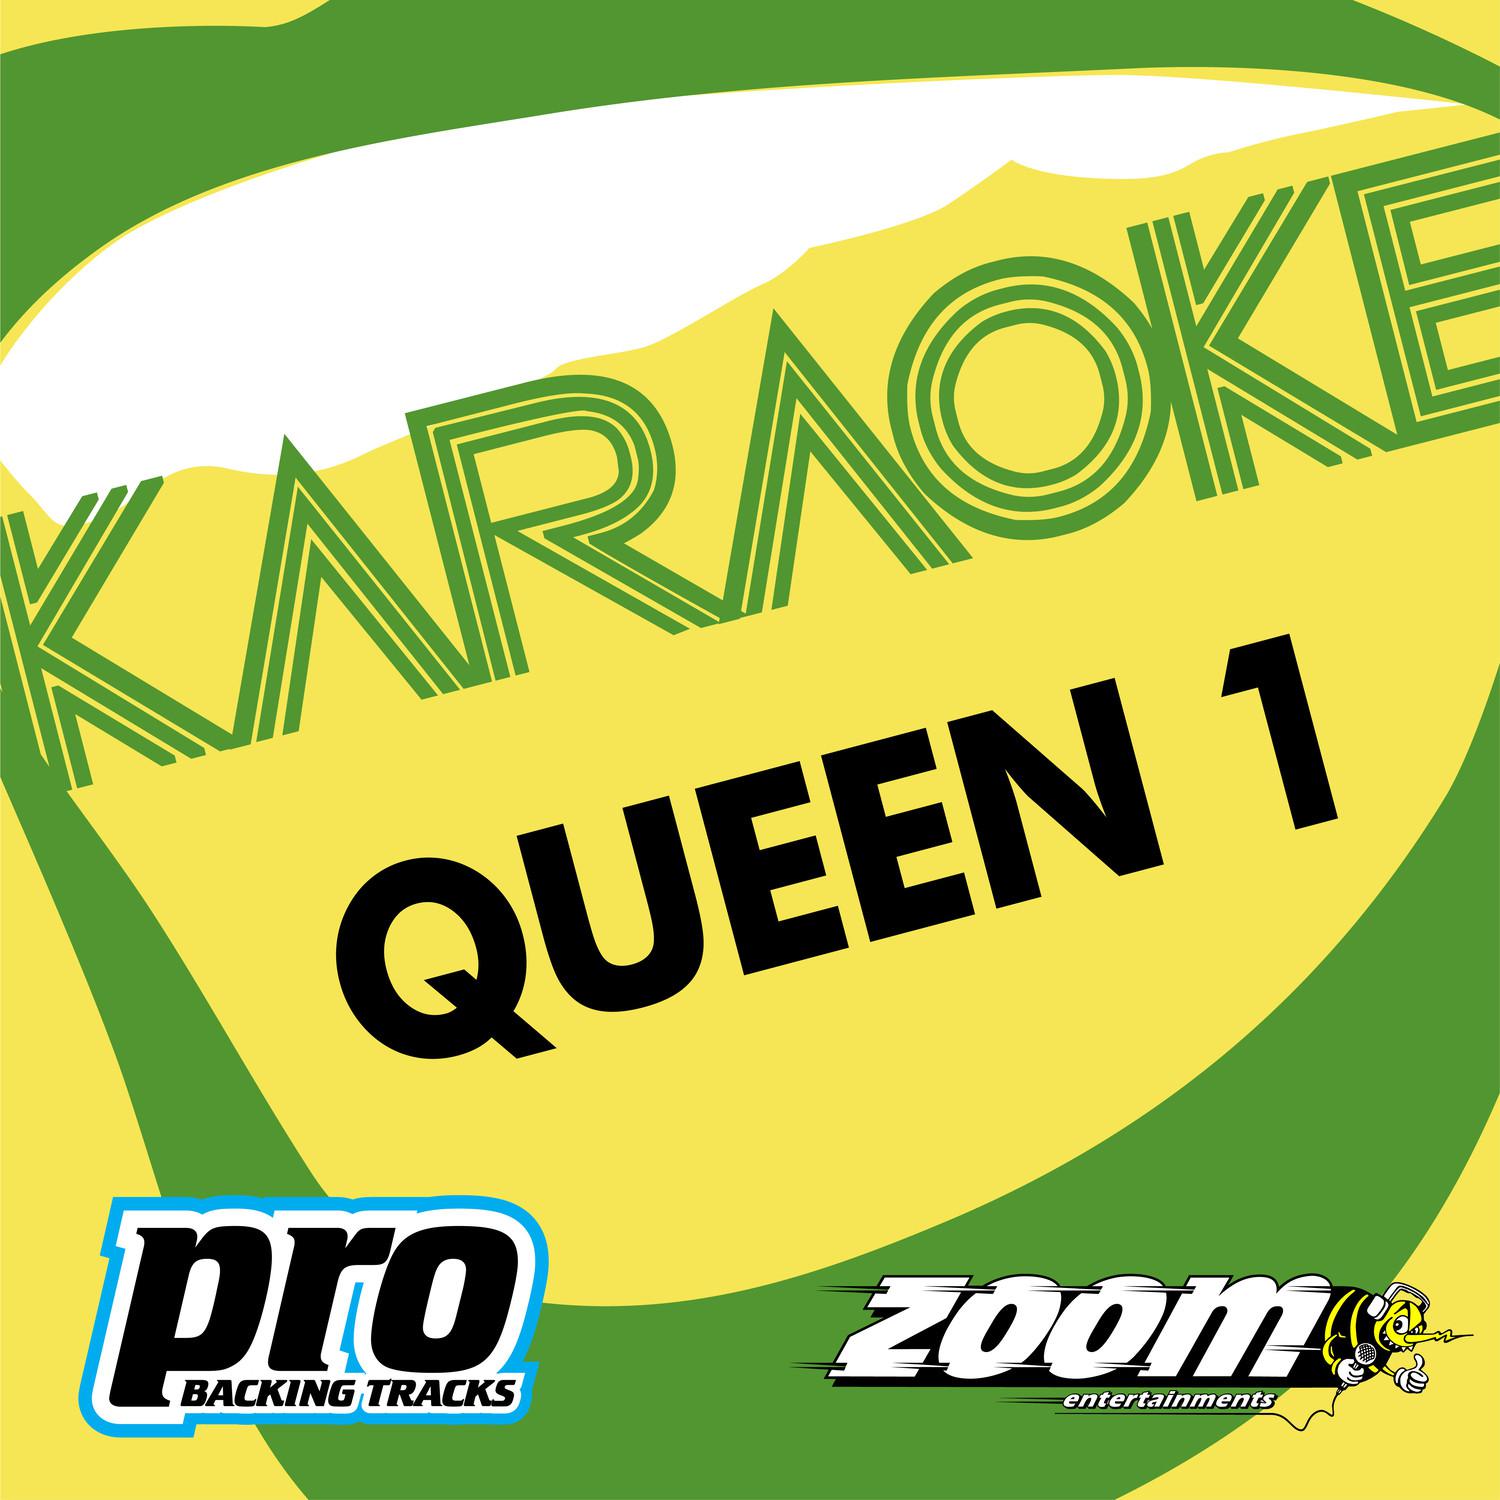 Zoom Karaoke - Queen 1